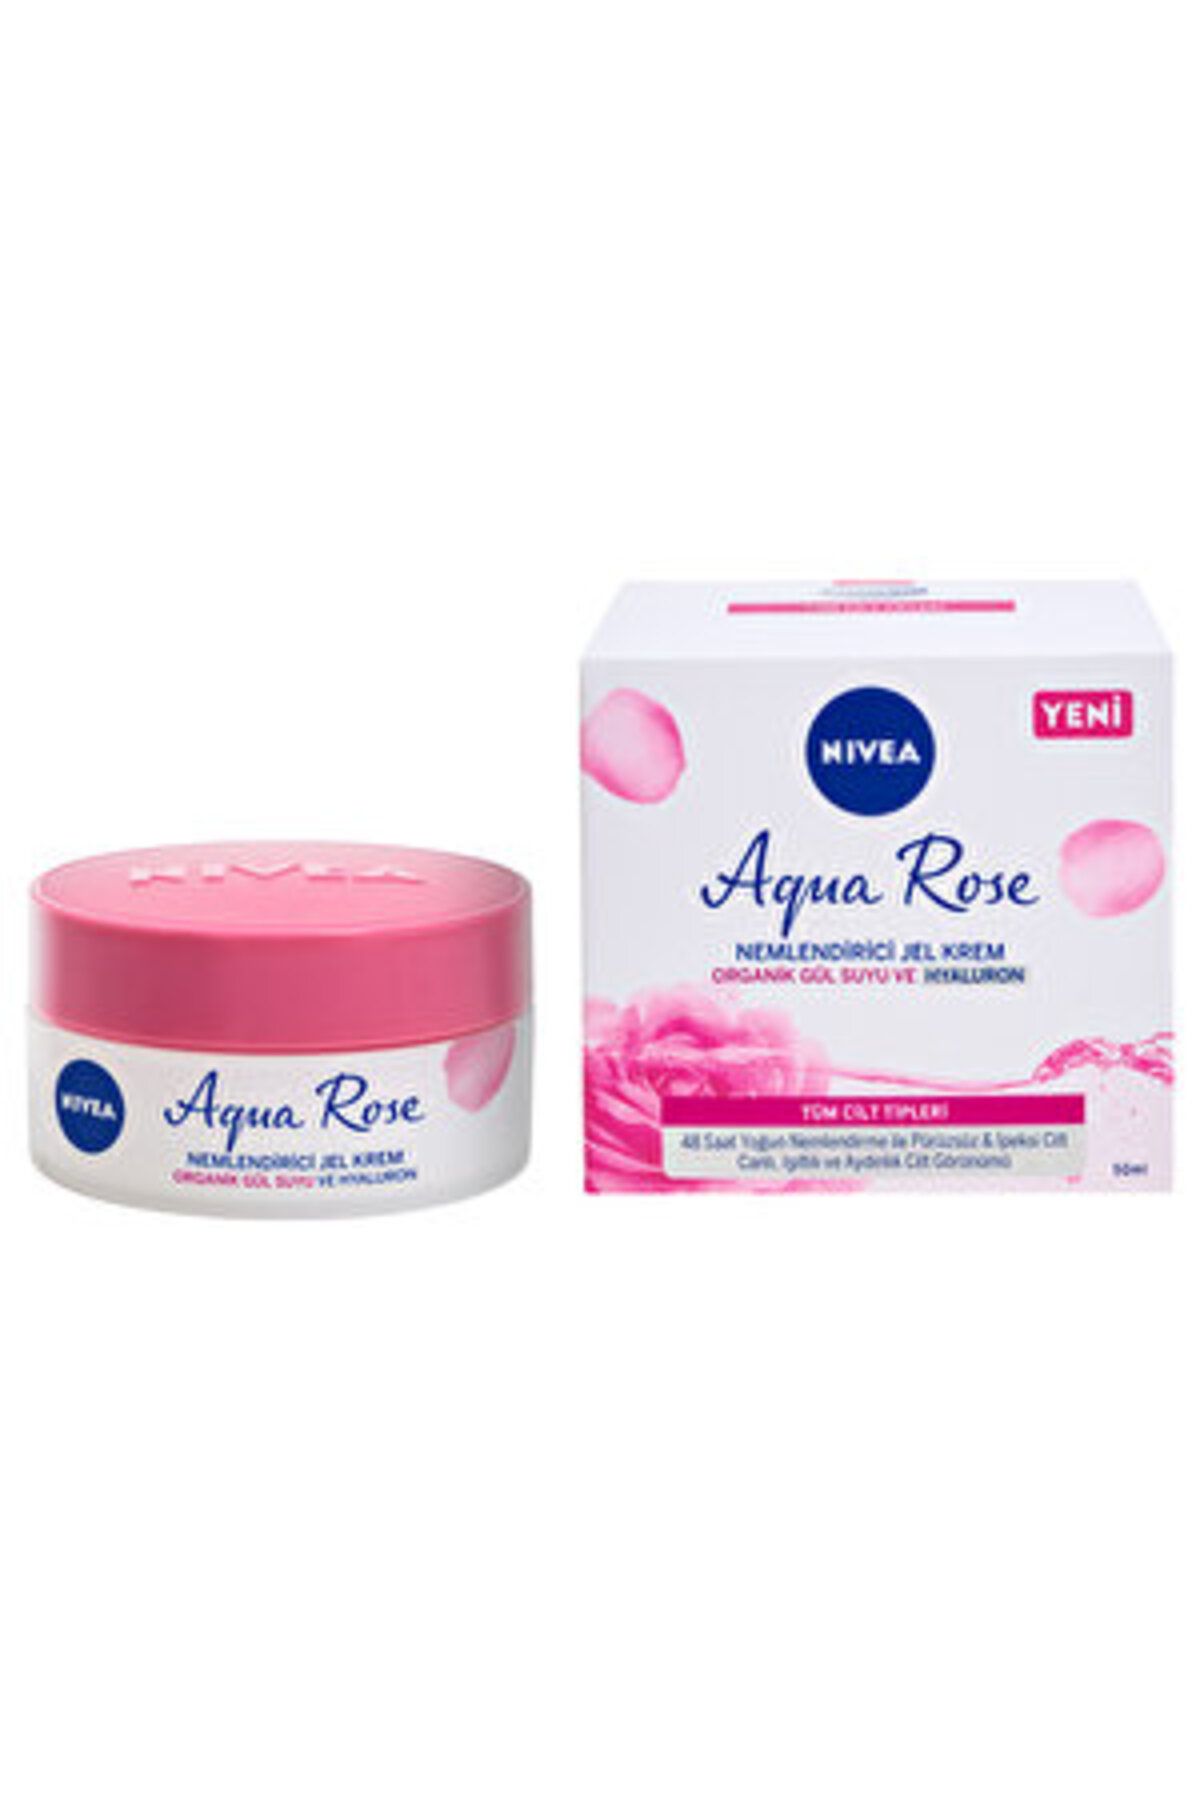 NIVEA ( 3 ADET ) Nivea Aqua Rose Organik Gül Suyu İçeren Nemlendirici Jel Yüz Kremi 50 ml